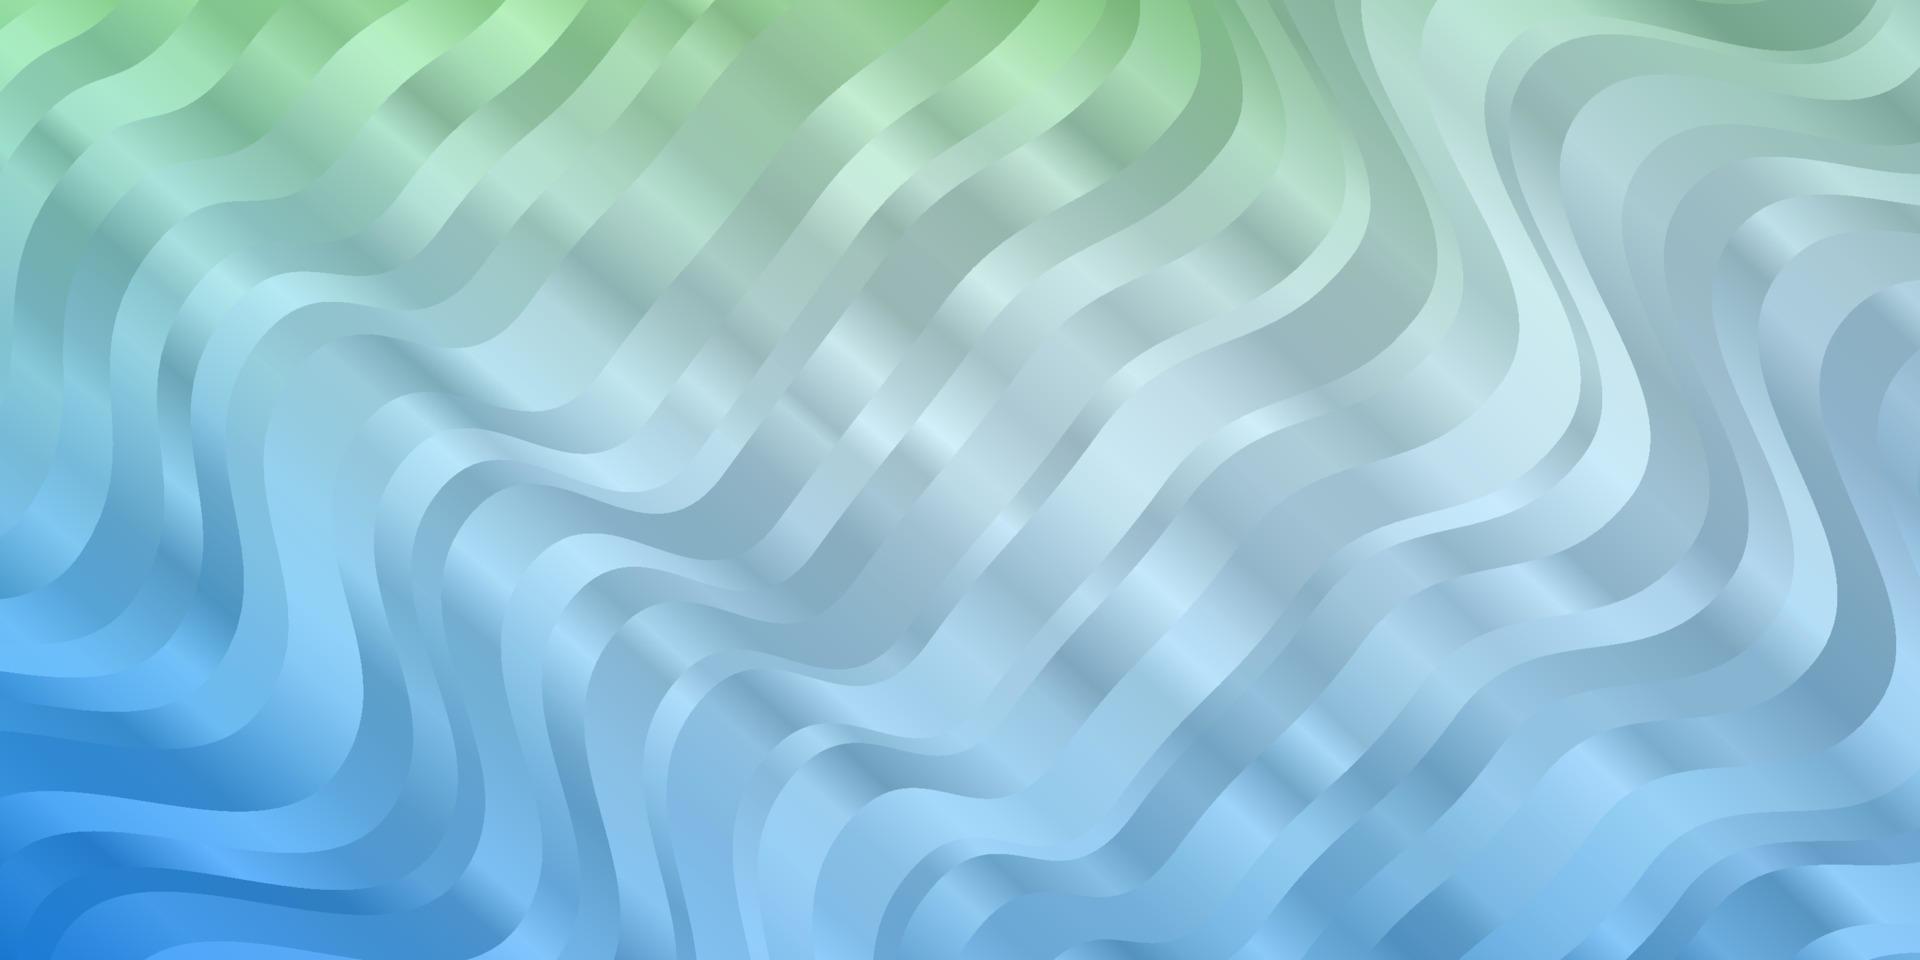 padrão de vetor azul e verde claro com linhas irônicas.